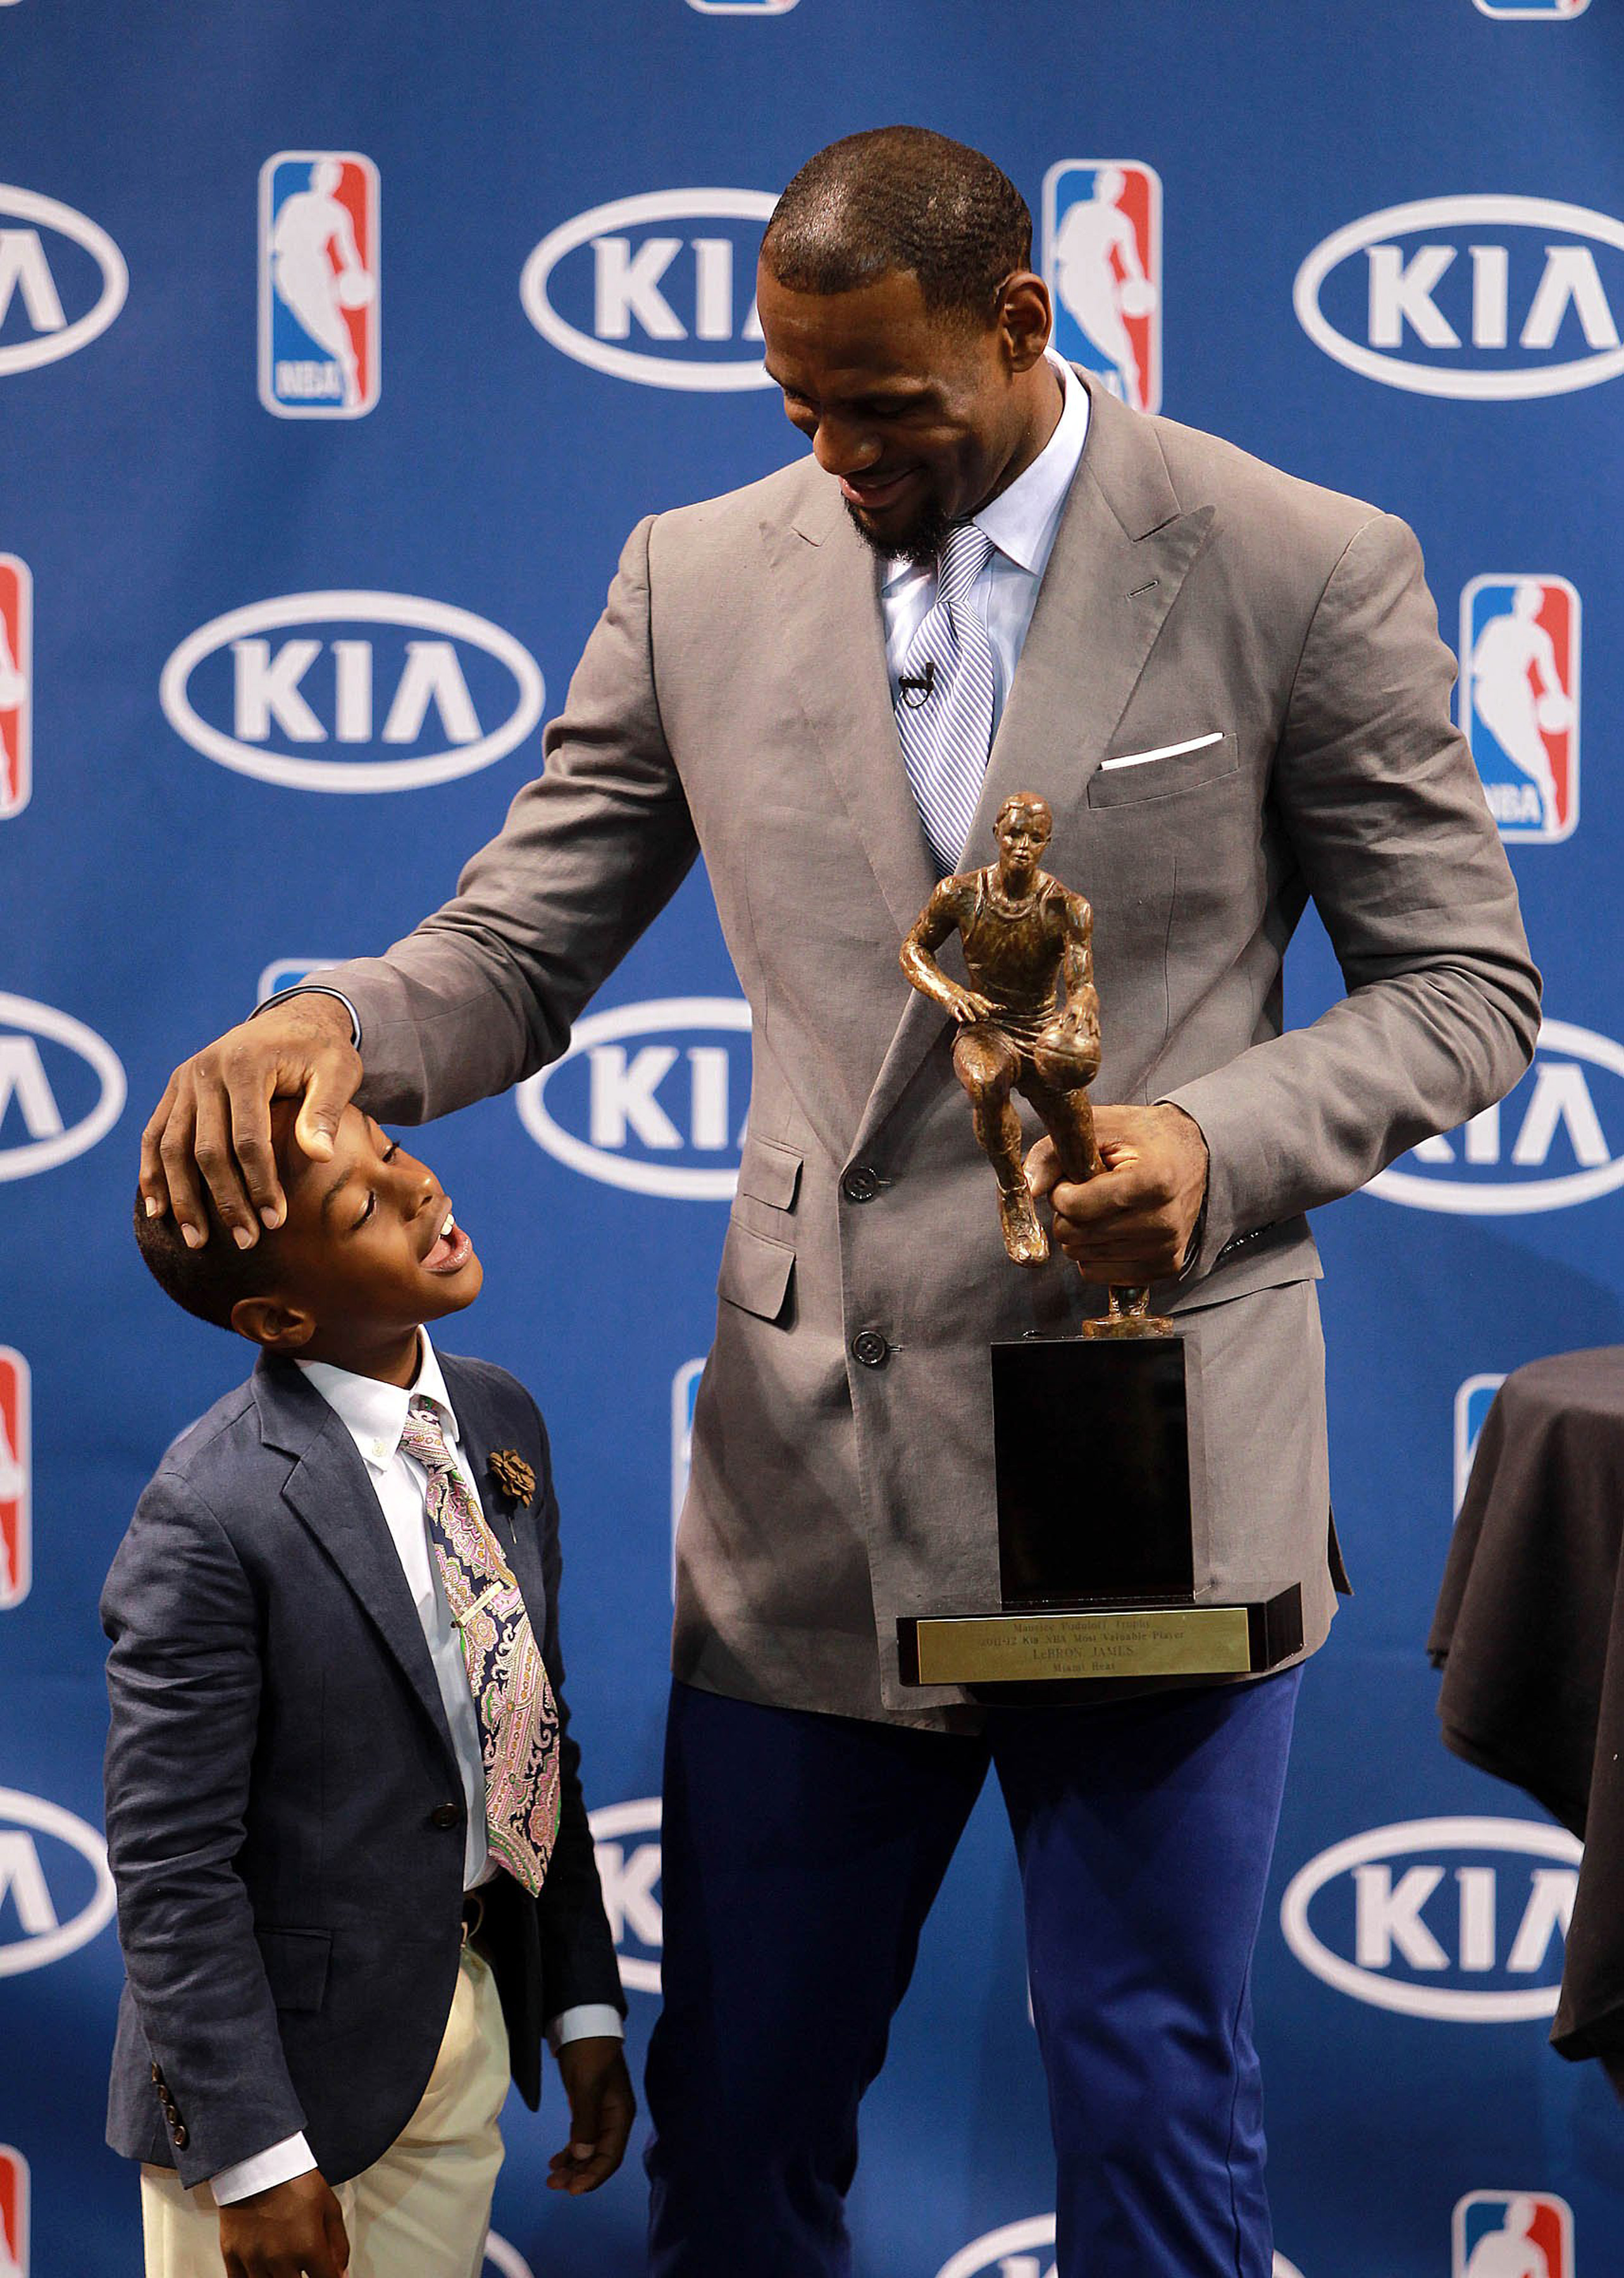 Bronny und LeBron James bei der Pressekonferenz, auf der LeBron James seinen NBA MVP Award 2012 in Miami entgegennahm, 2012 | Quelle: Getty Images